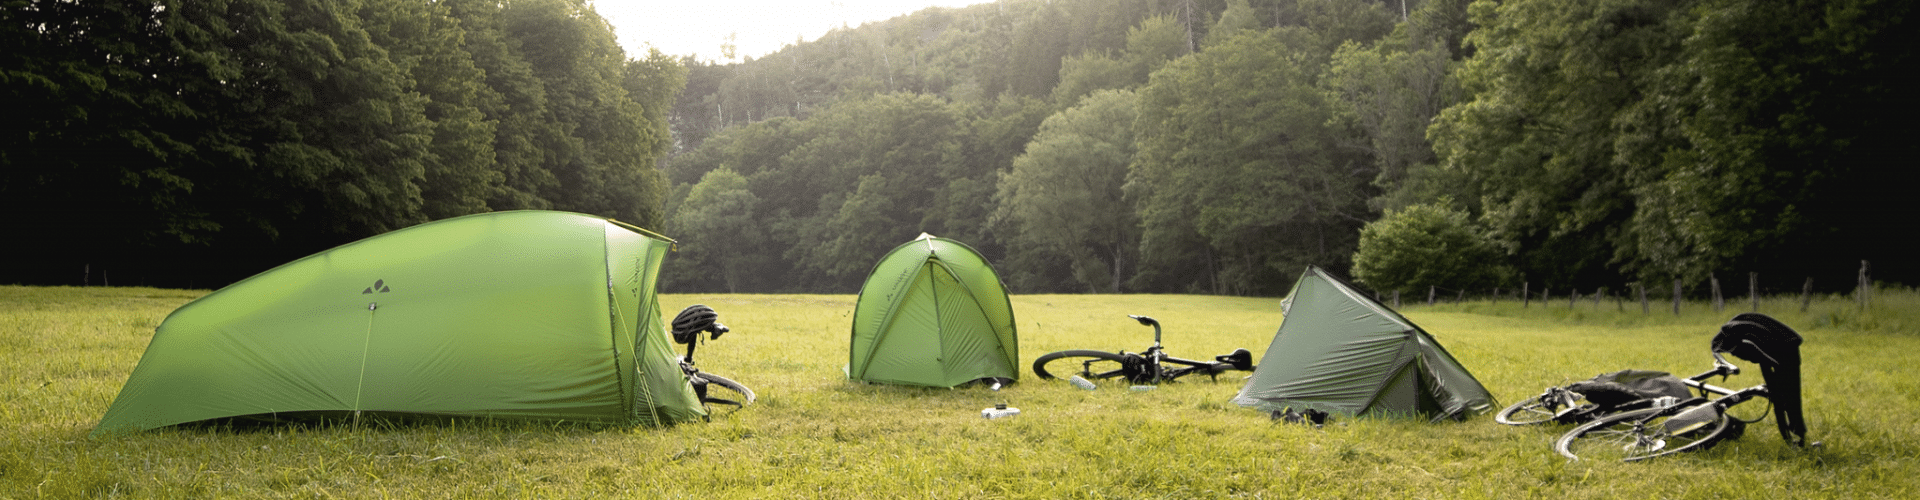 3 Zelte von VAUDE aufgeschlagen auf einer Wiese umringt von Bäumen. Neben jedem Zelt liegt ein Fahrrad.